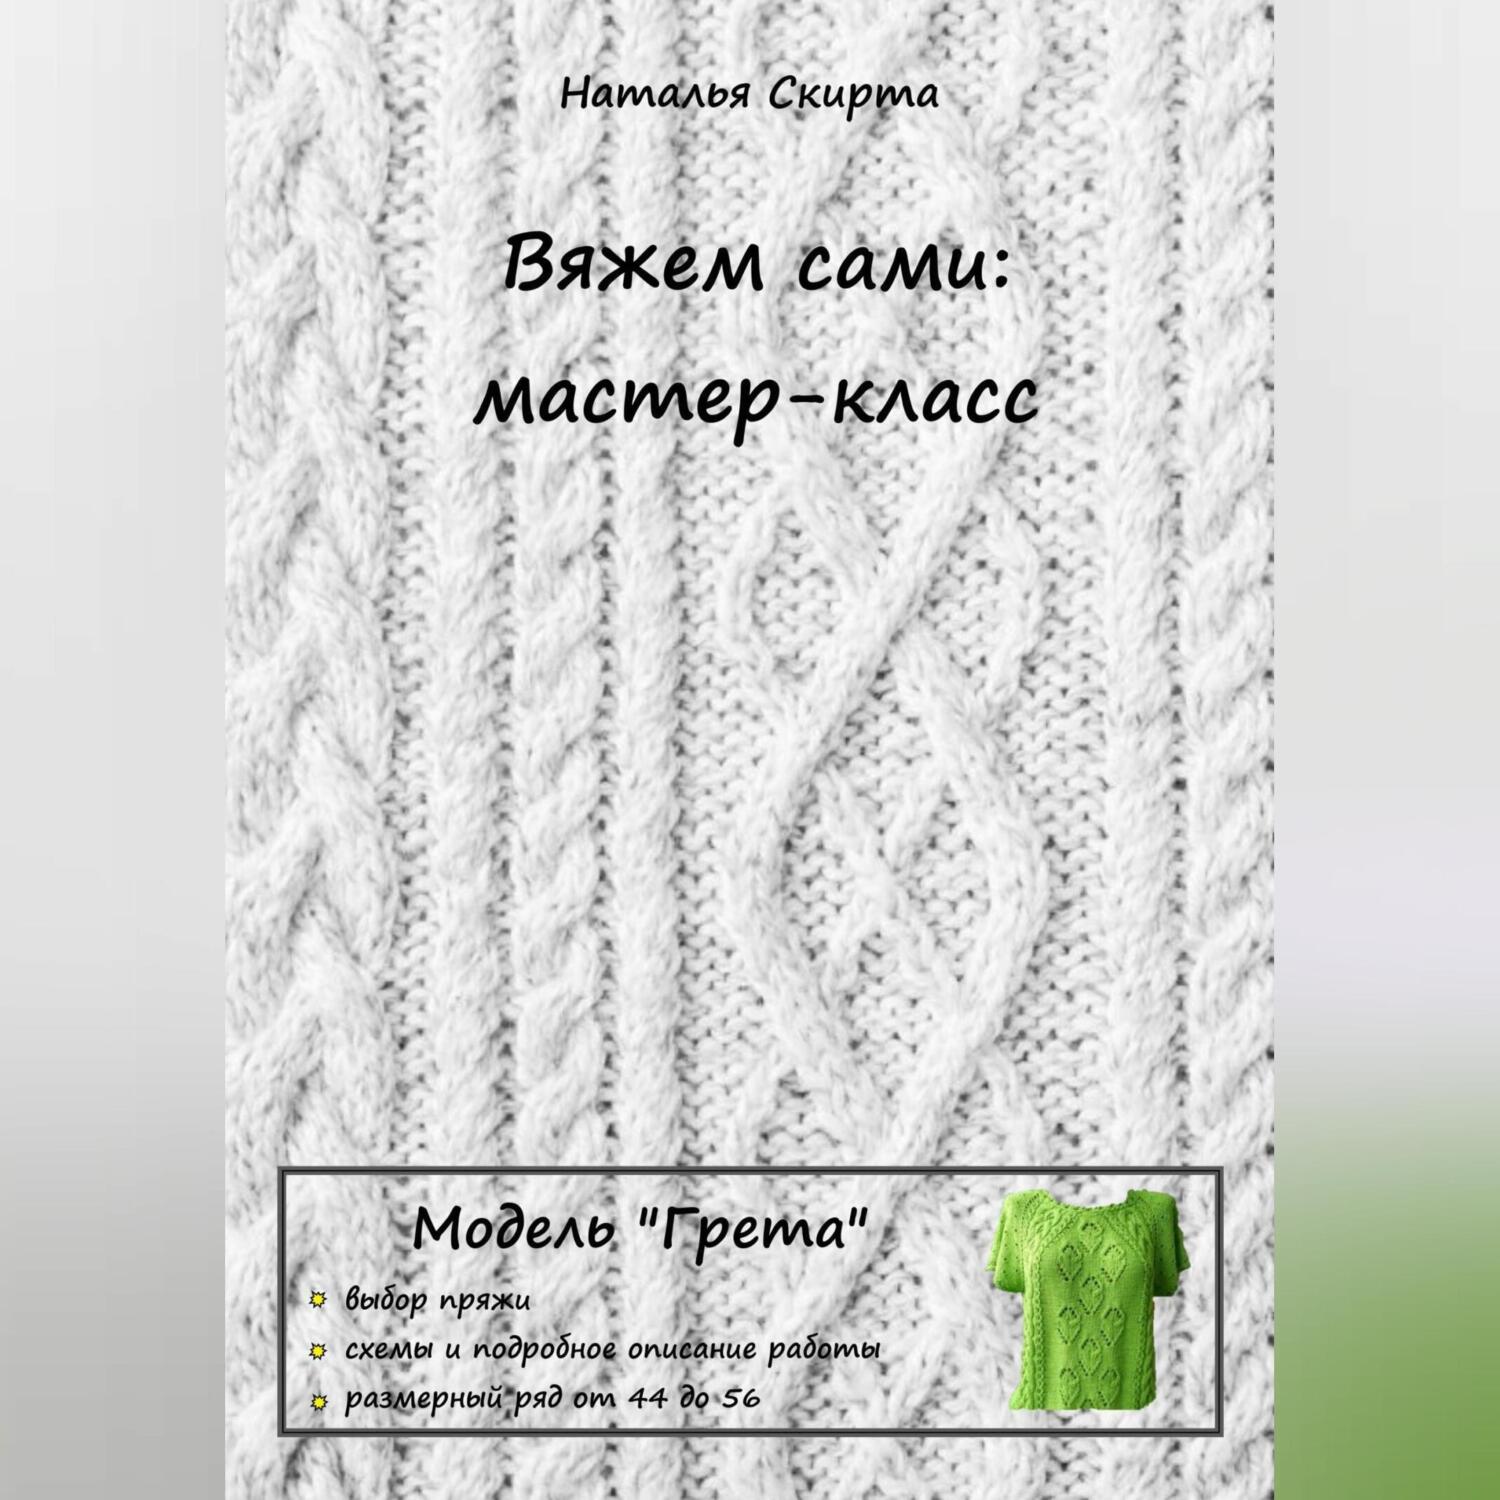 Вязание для женщин спицами и крючком, схемы и описания - kormstroytorg.ru